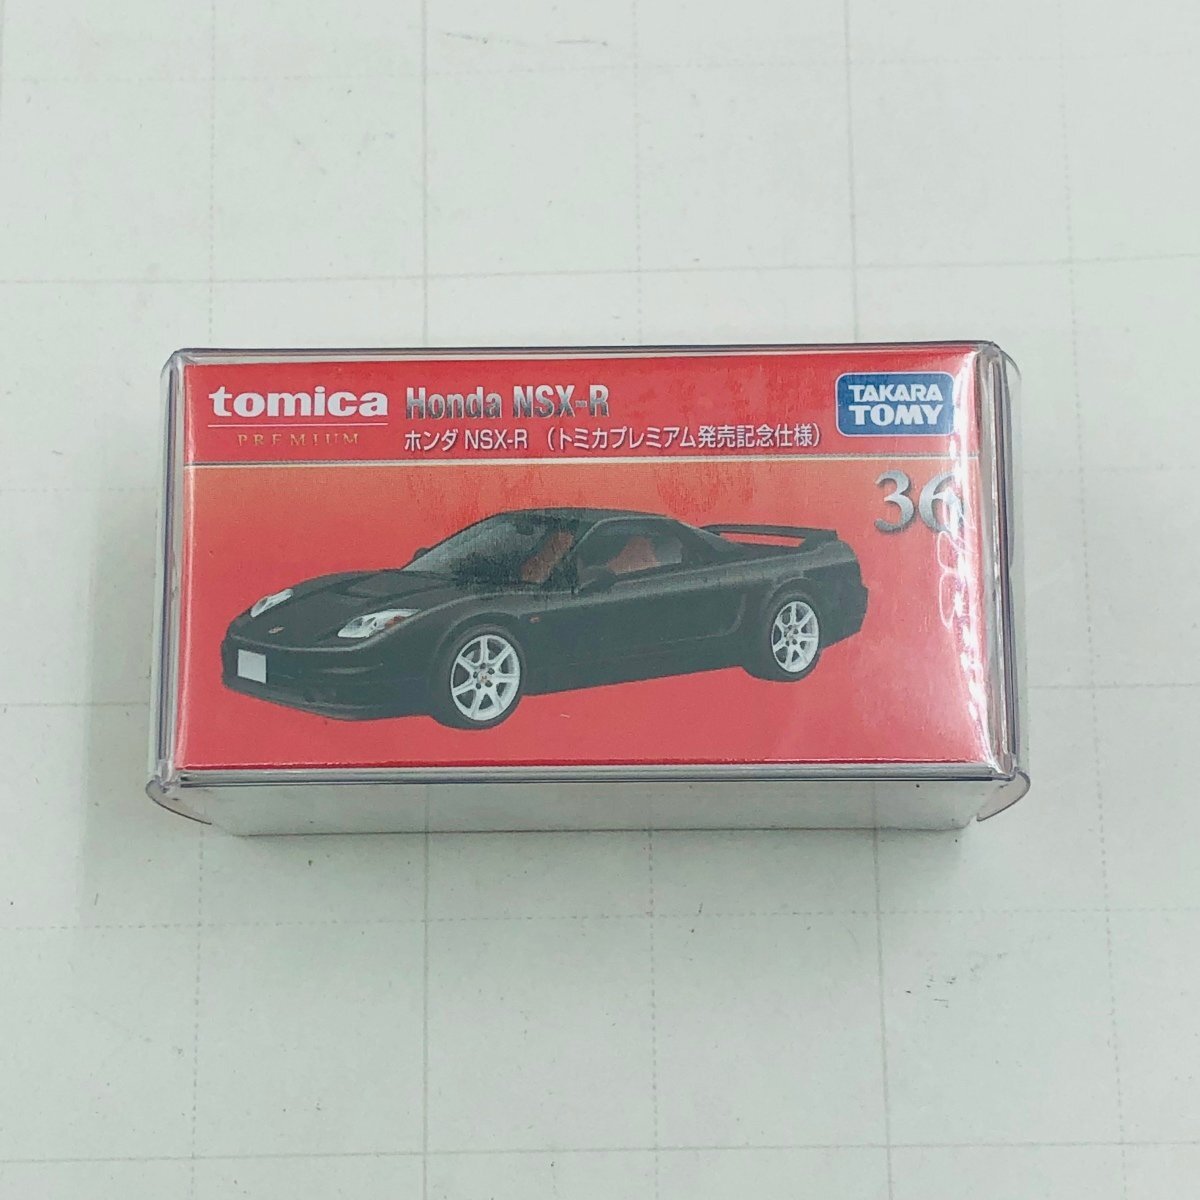 新品未開封 タカラトミー トミカ プレミアム発売記念仕様 ホンダ Honda NSX-R tomica PREMIUMの画像1